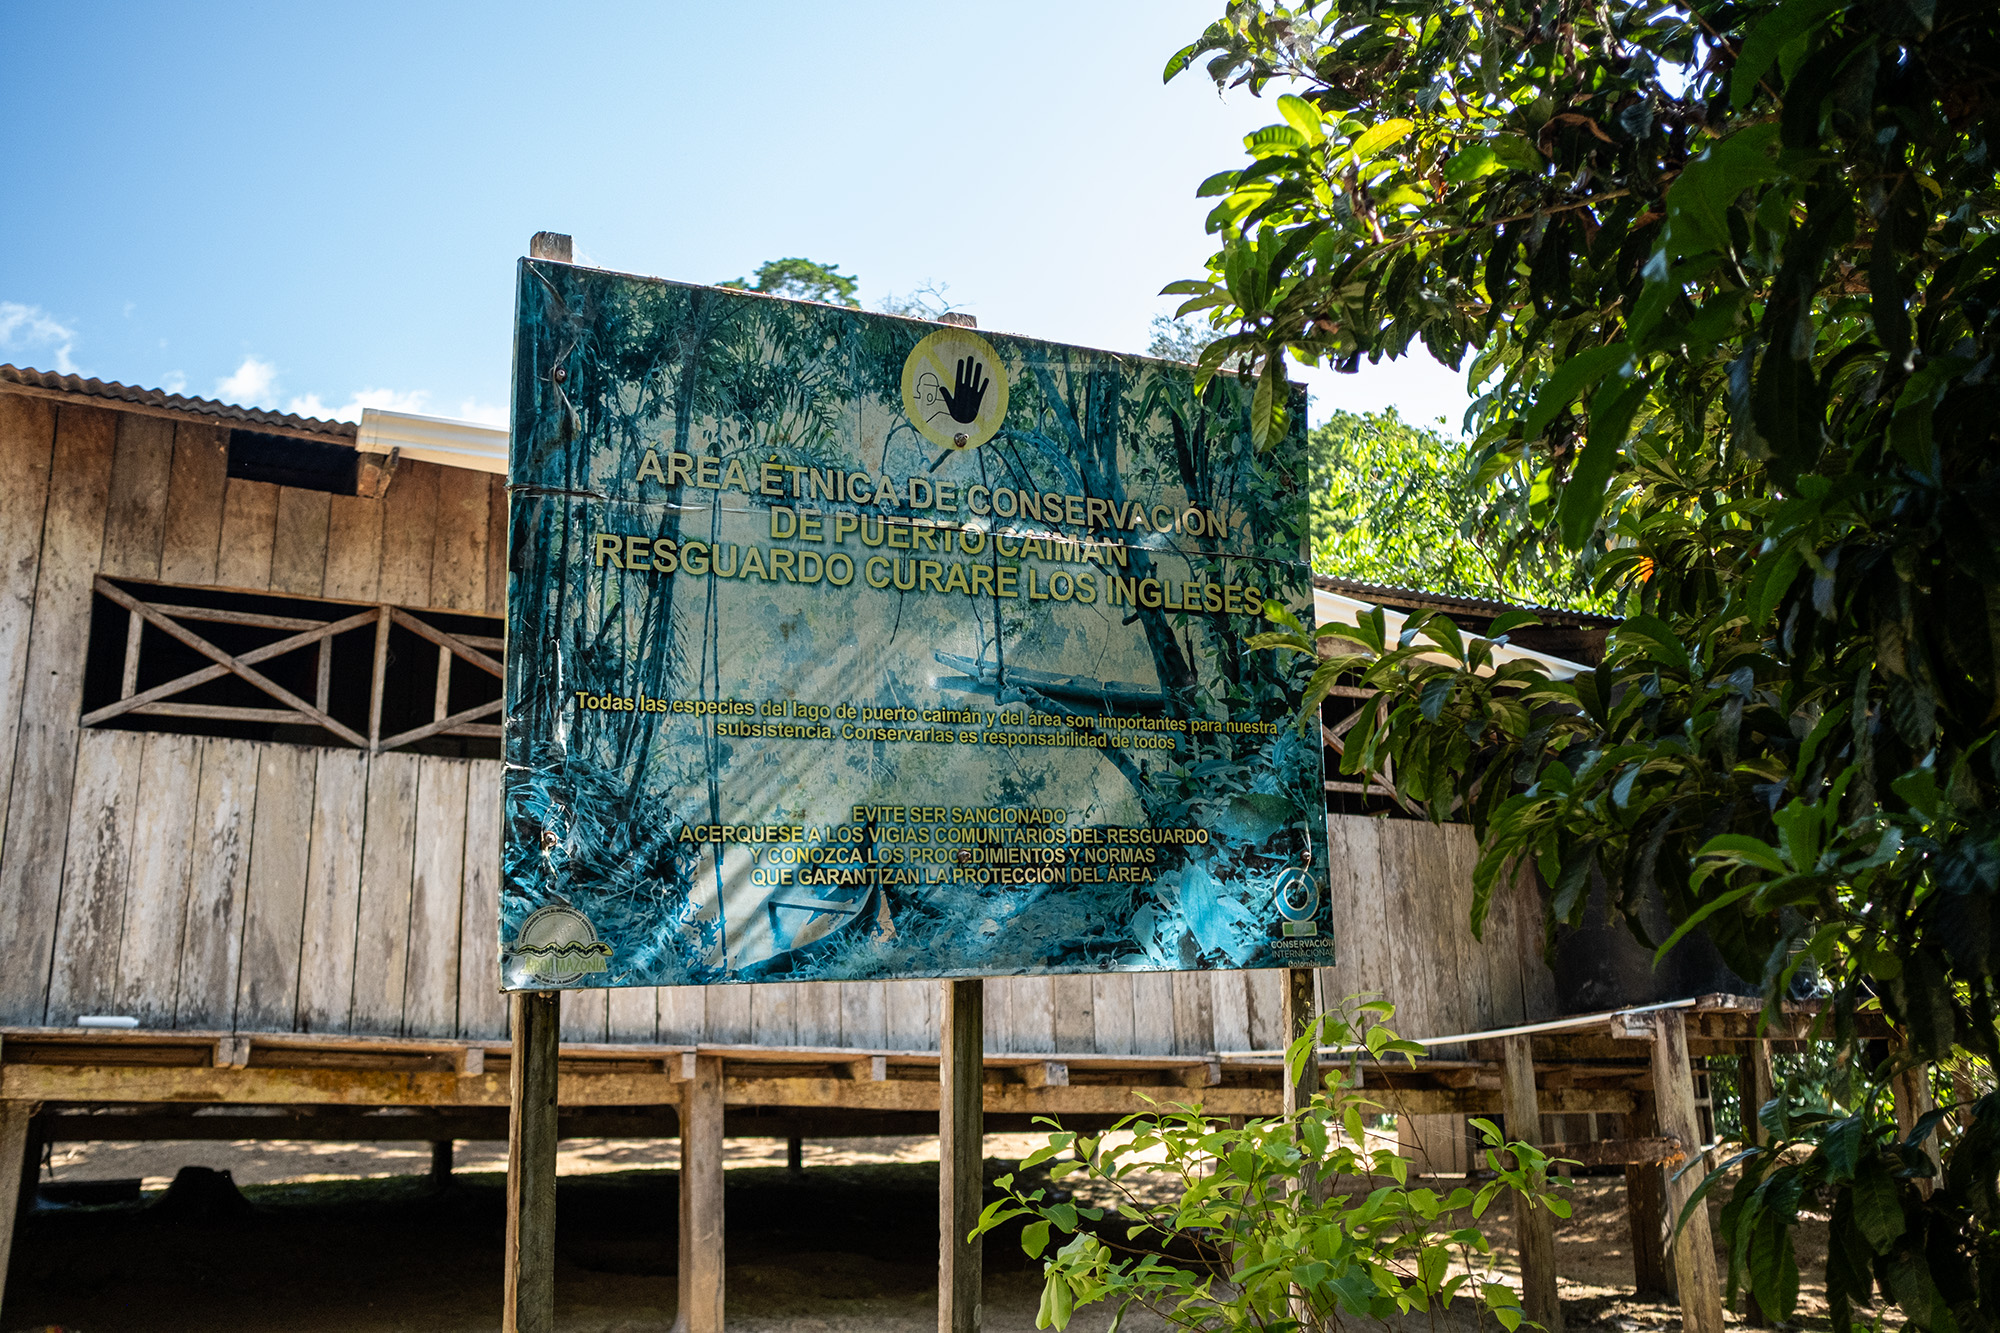 Vista aérea de los caños y vertientes del río Caquetá que componen la zona de conservación de Puerto Caimán. Resguardo Curare Los Ingleses en Amazonas, Colombia. Crédito: Víctor Galeano.